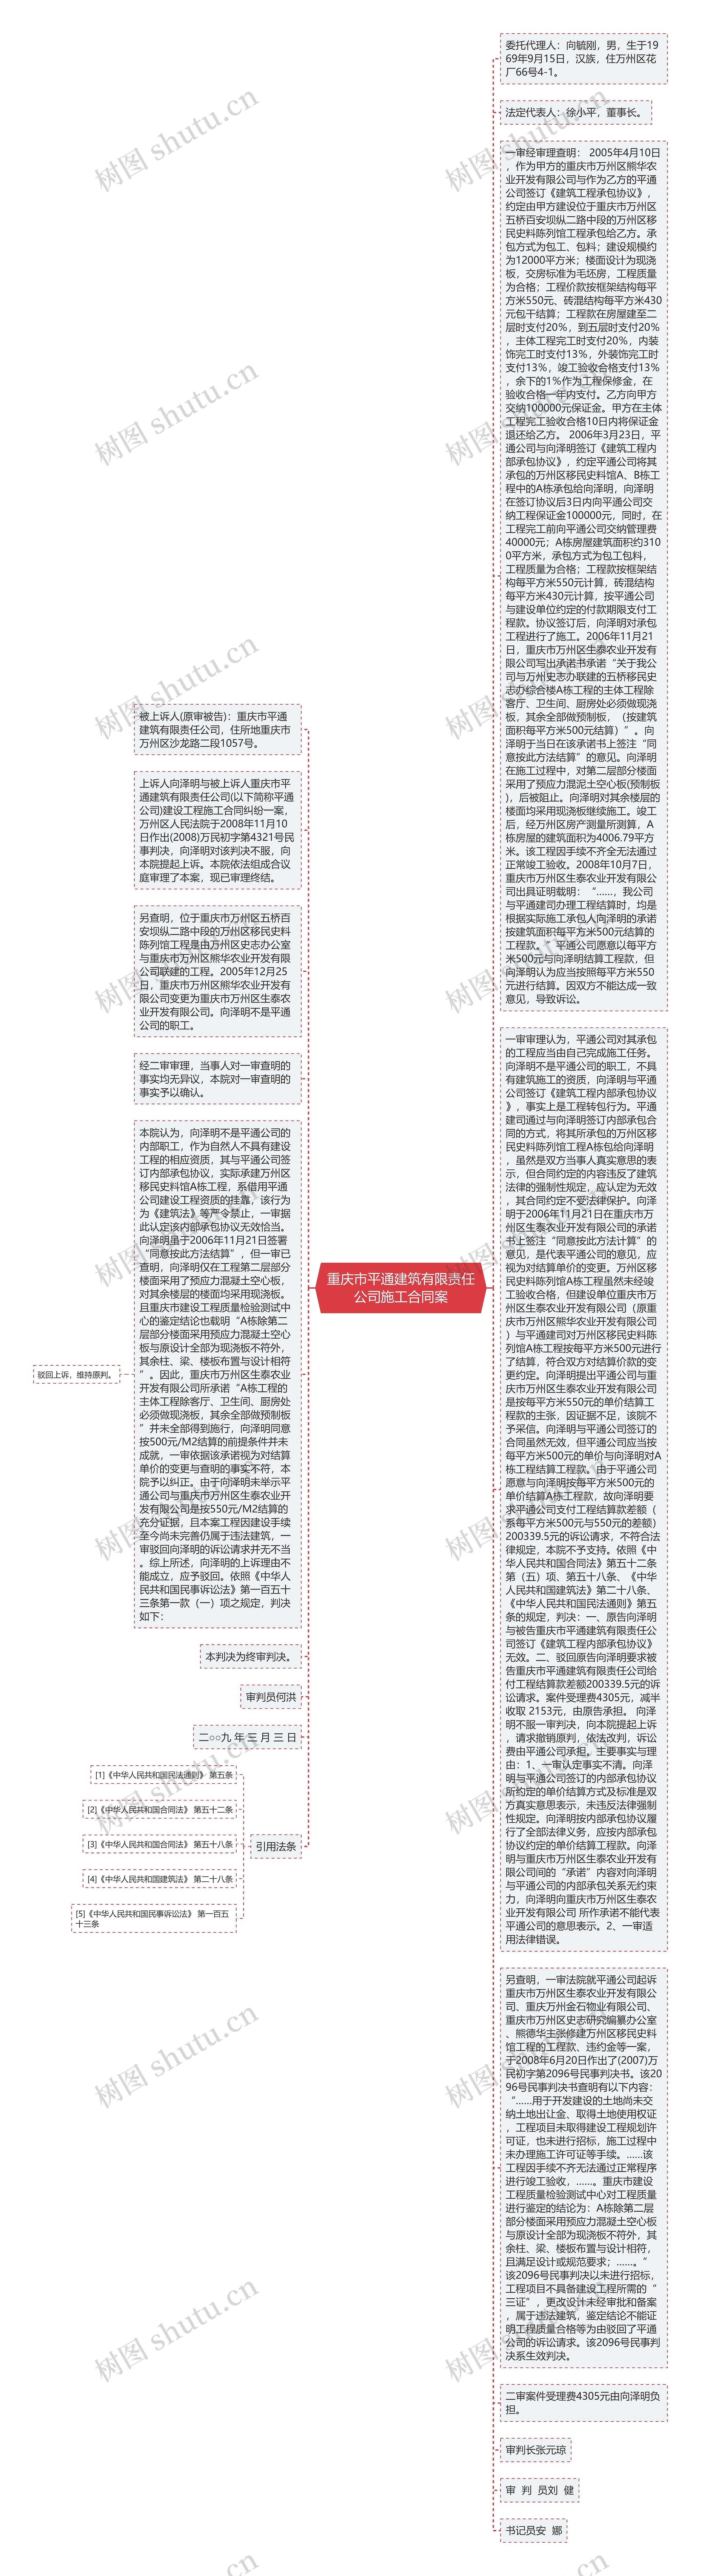 重庆市平通建筑有限责任公司施工合同案思维导图